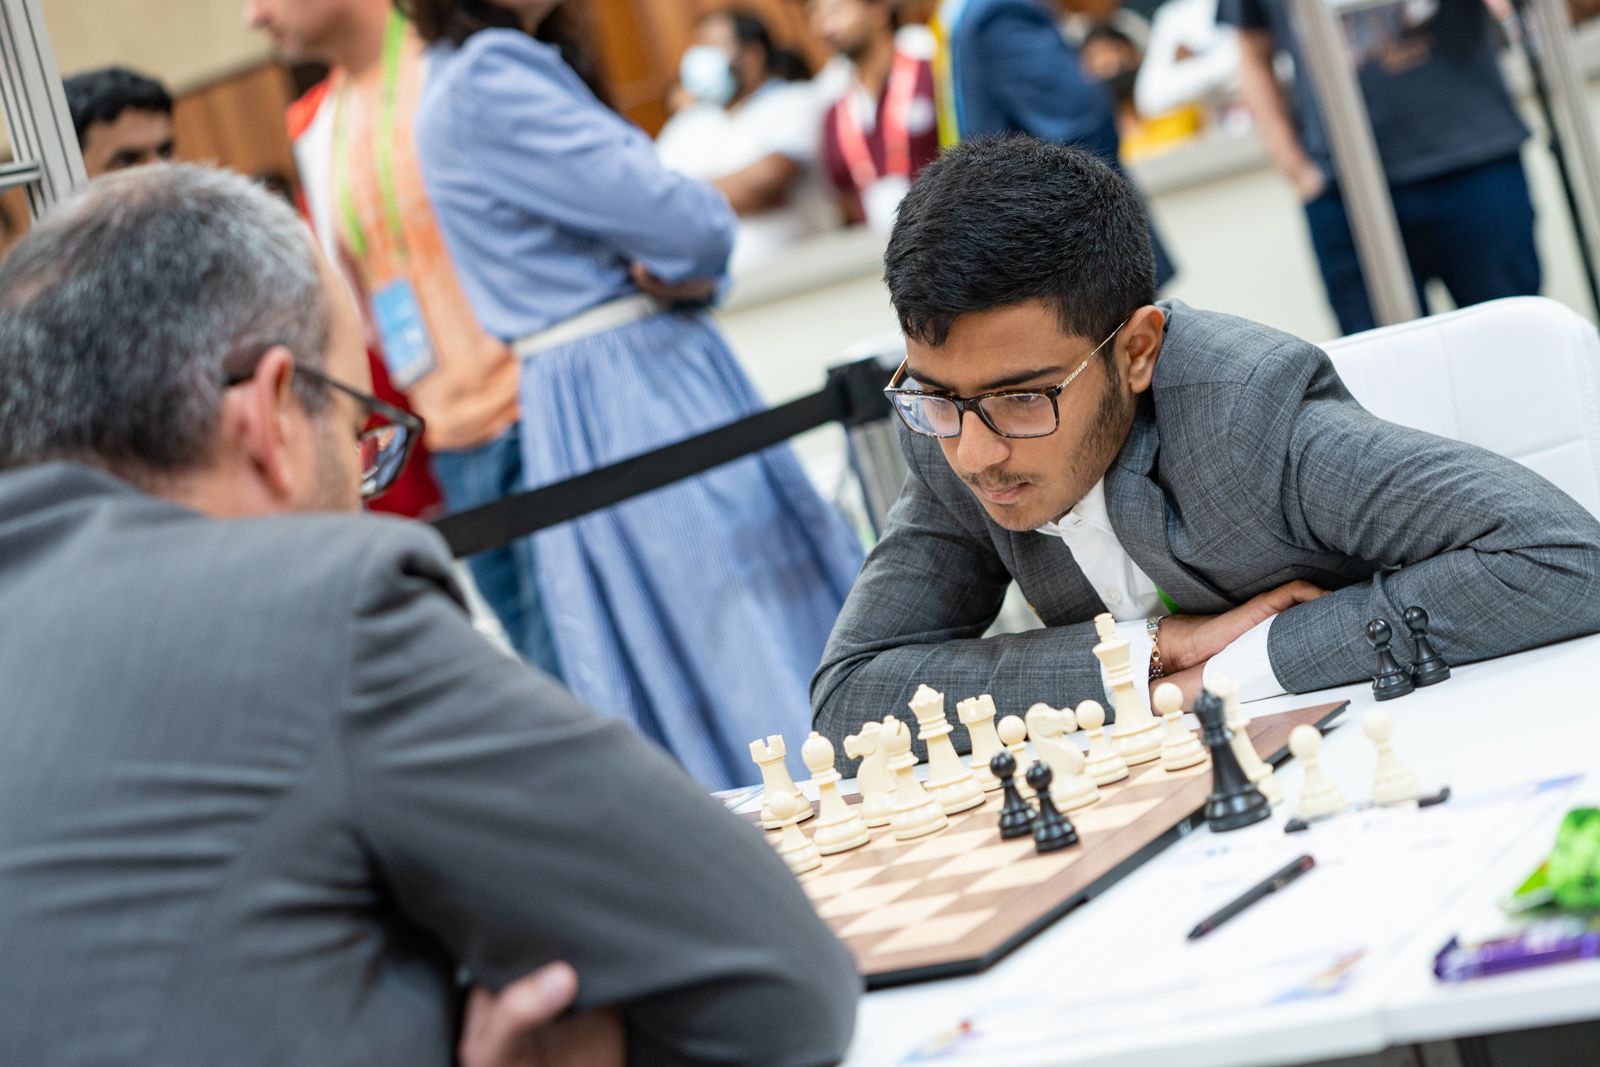 Gukesh D defeats Fabiano Caruana to score incredible 8/8 – Chessdom